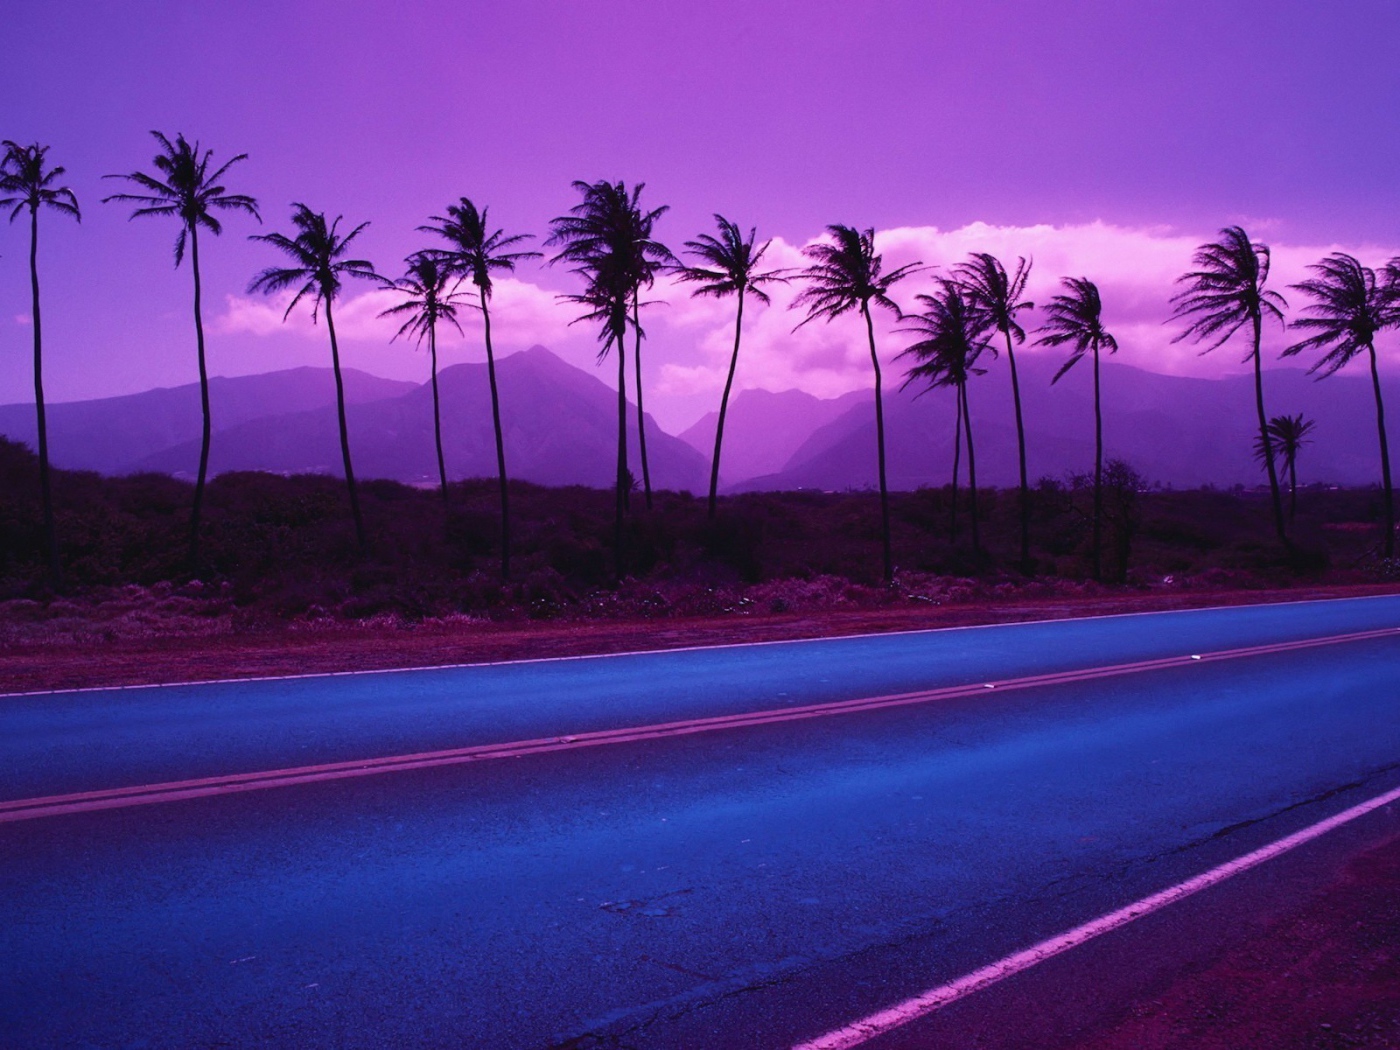 Пальмы на фоне фиолетовых гор и облаков